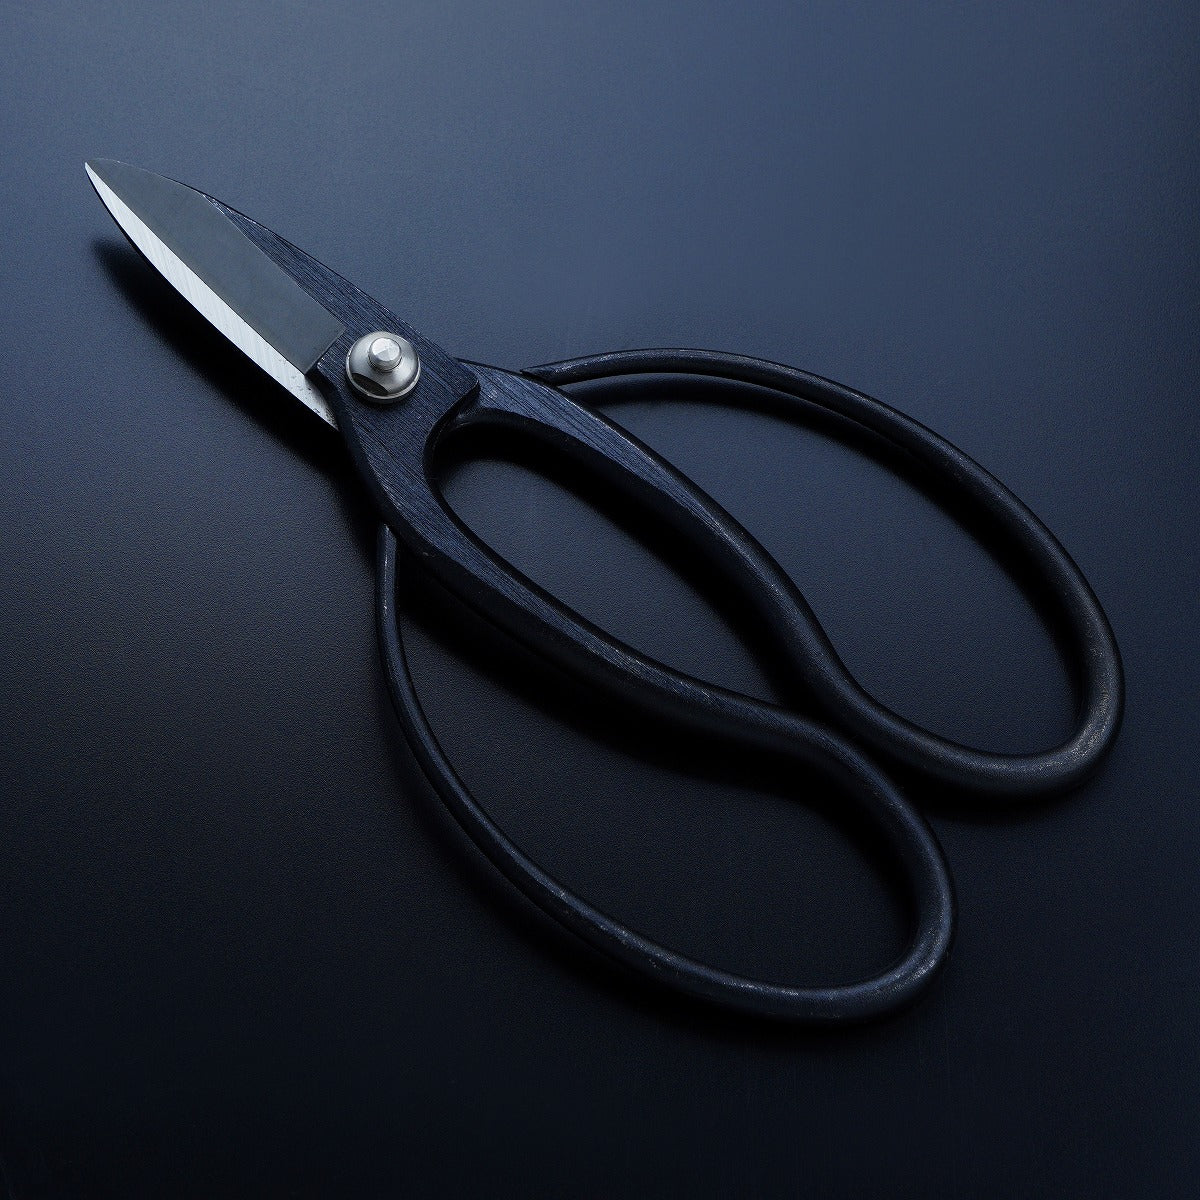 HONMAMON "SHIGEKATSU" Garden Shears for Left Hander 180mm(abt 7.1 Inch) Okubo Scissors